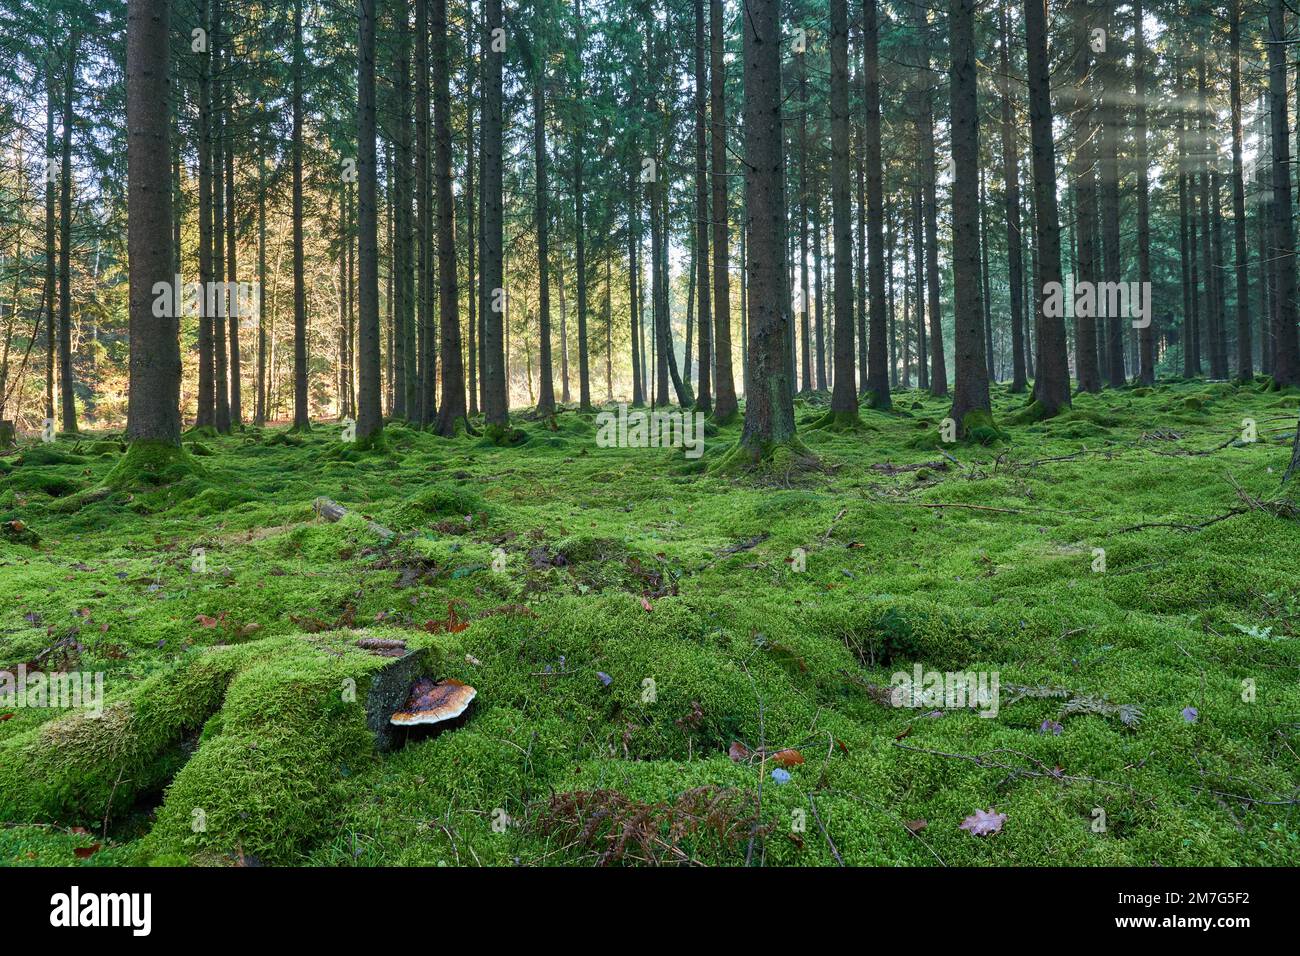 Märchenhafter Hochwald mit komplett moosbewachsenen Waldboden und fabelhaftem Baumpilz im Vordergrund Banque D'Images